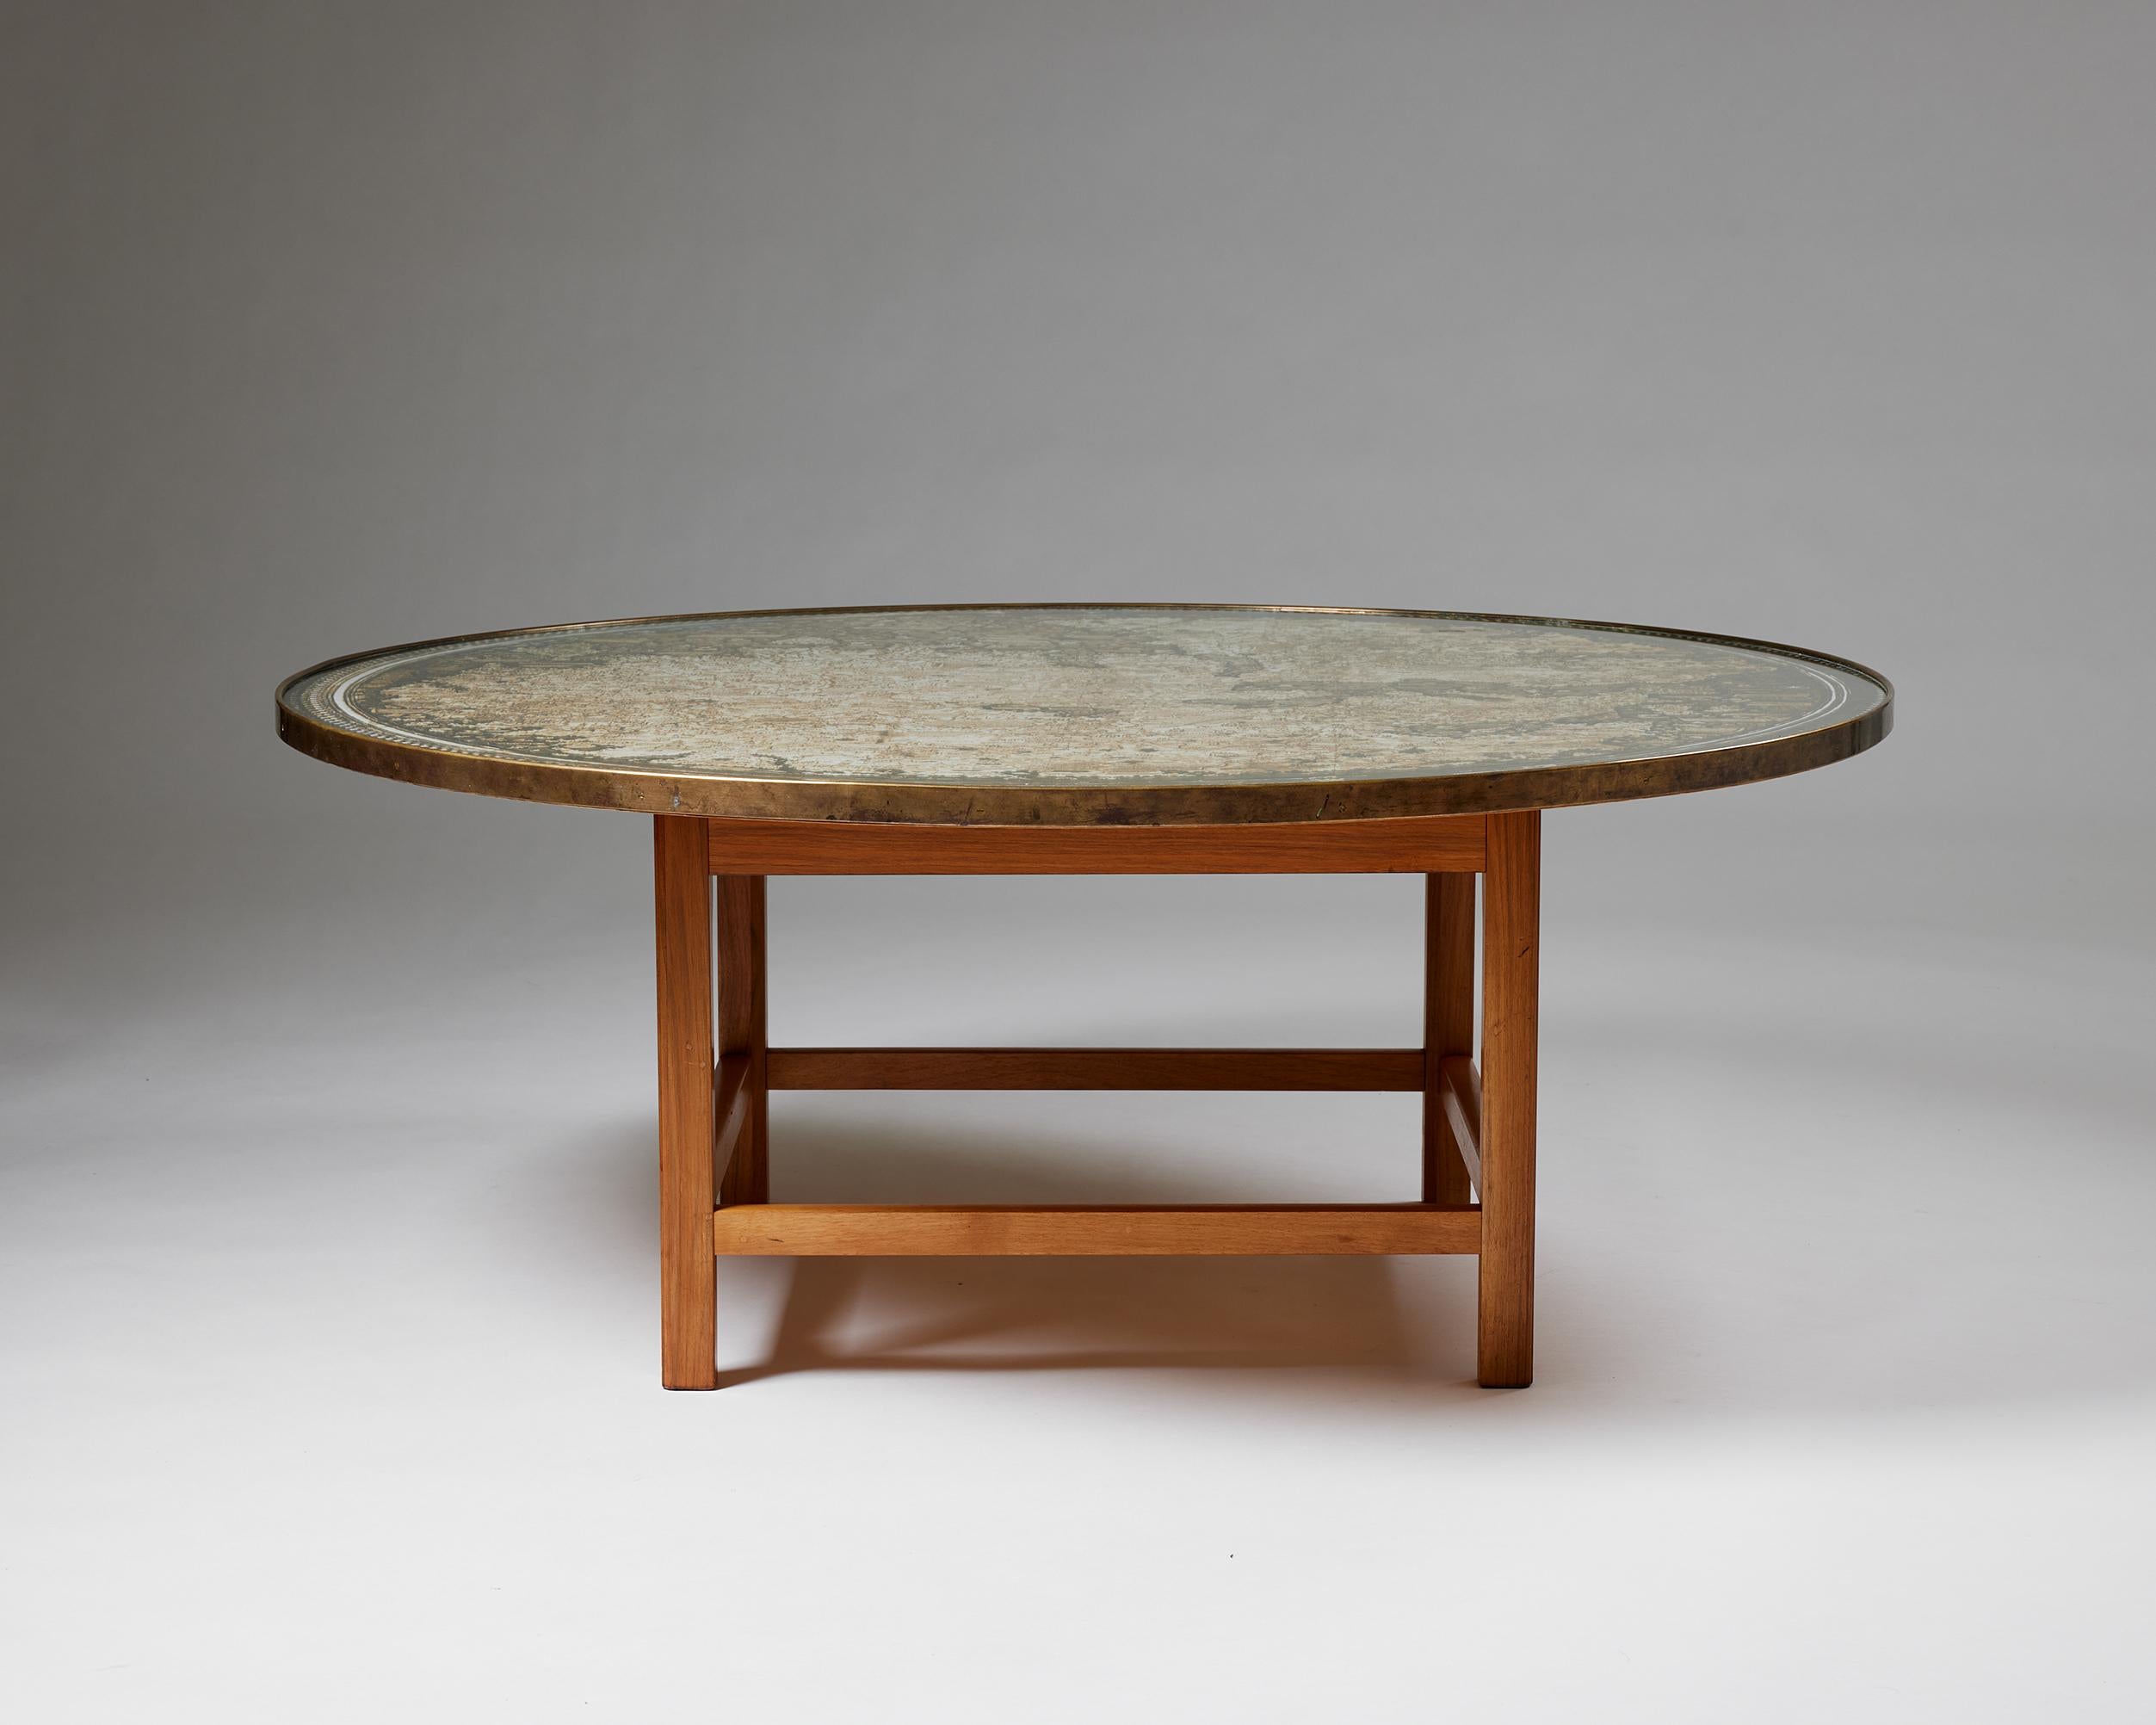 Swedish Occasional Table Model U 601 Designed by Josef Frank for Svenskt Tenn, Sweden